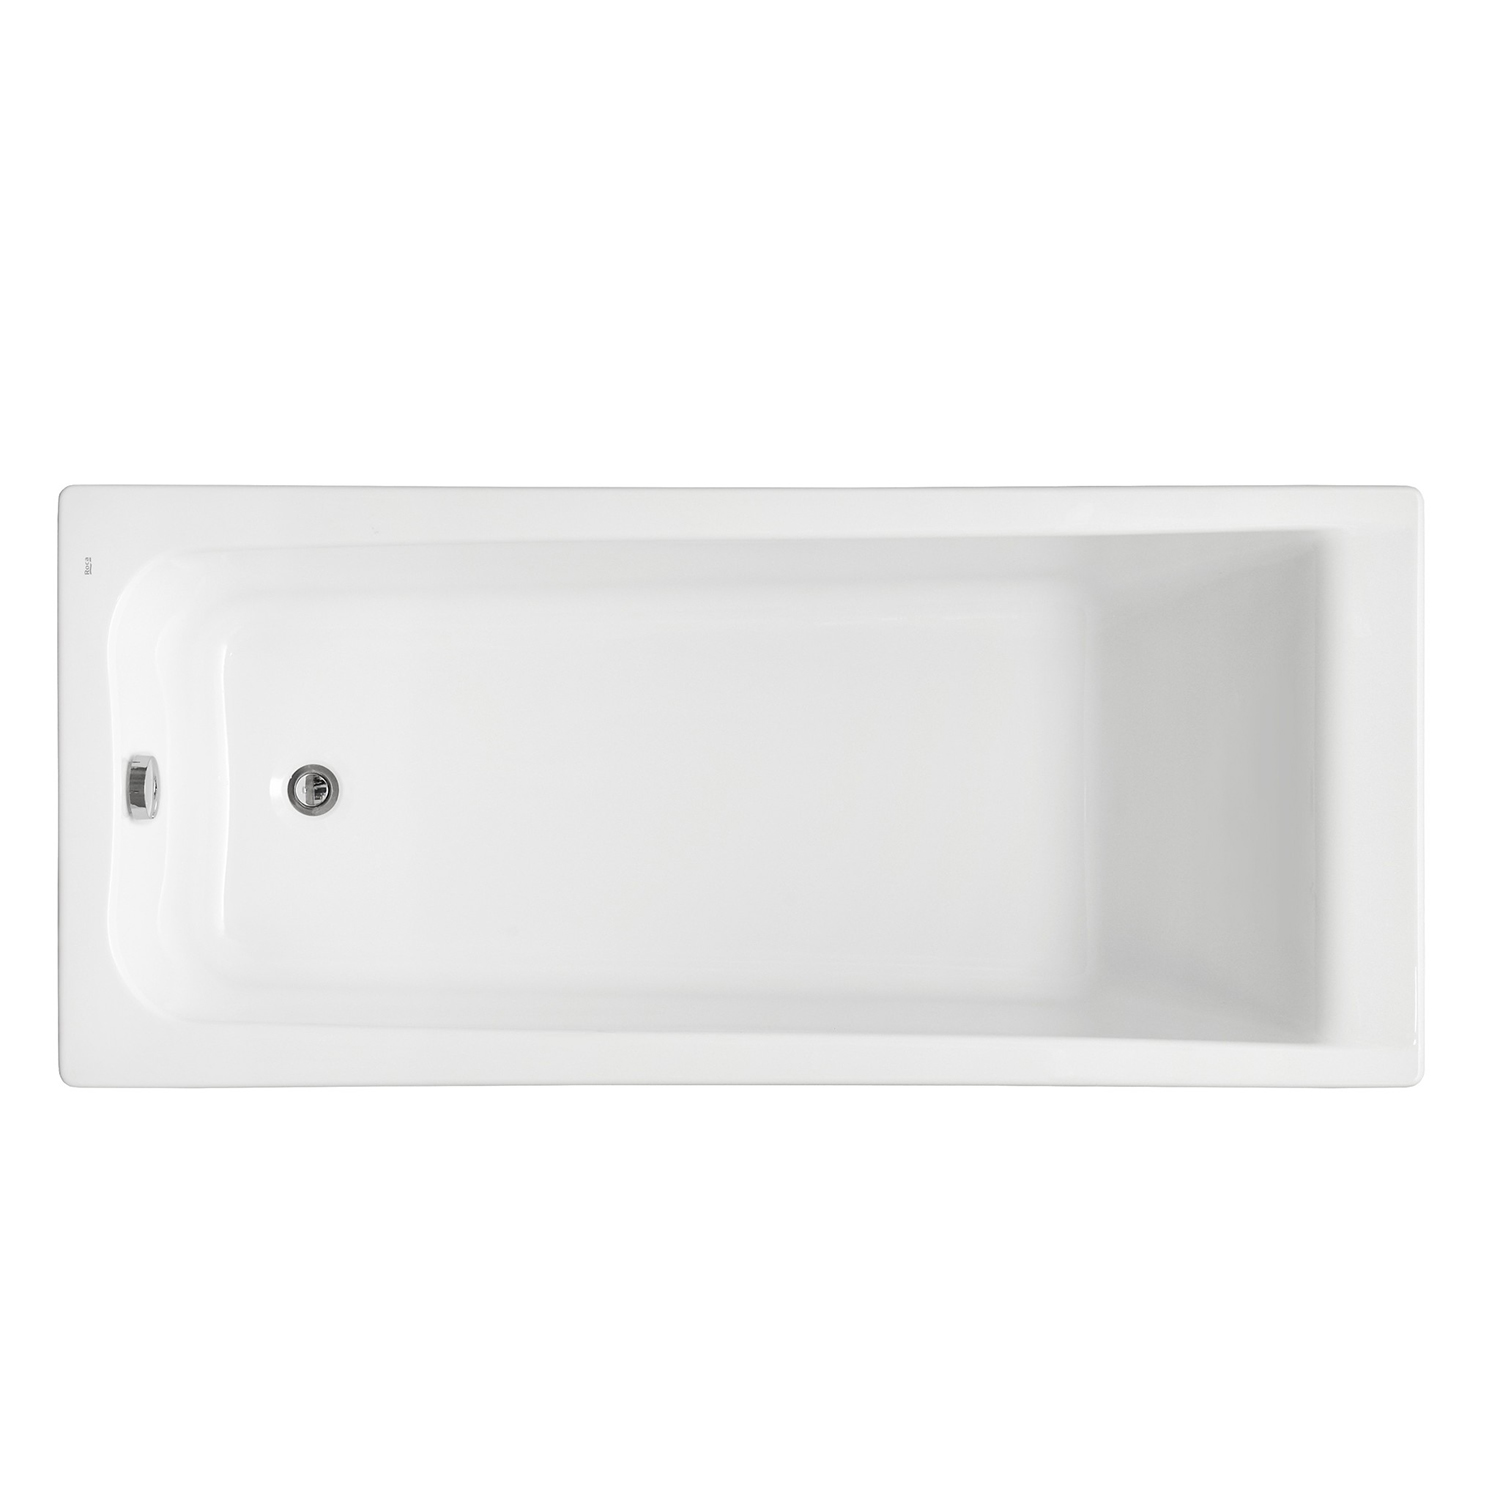 Ариловая ванна Roca Elba 170x70, цвет белый 7.2485.0.700.0 - фото 1